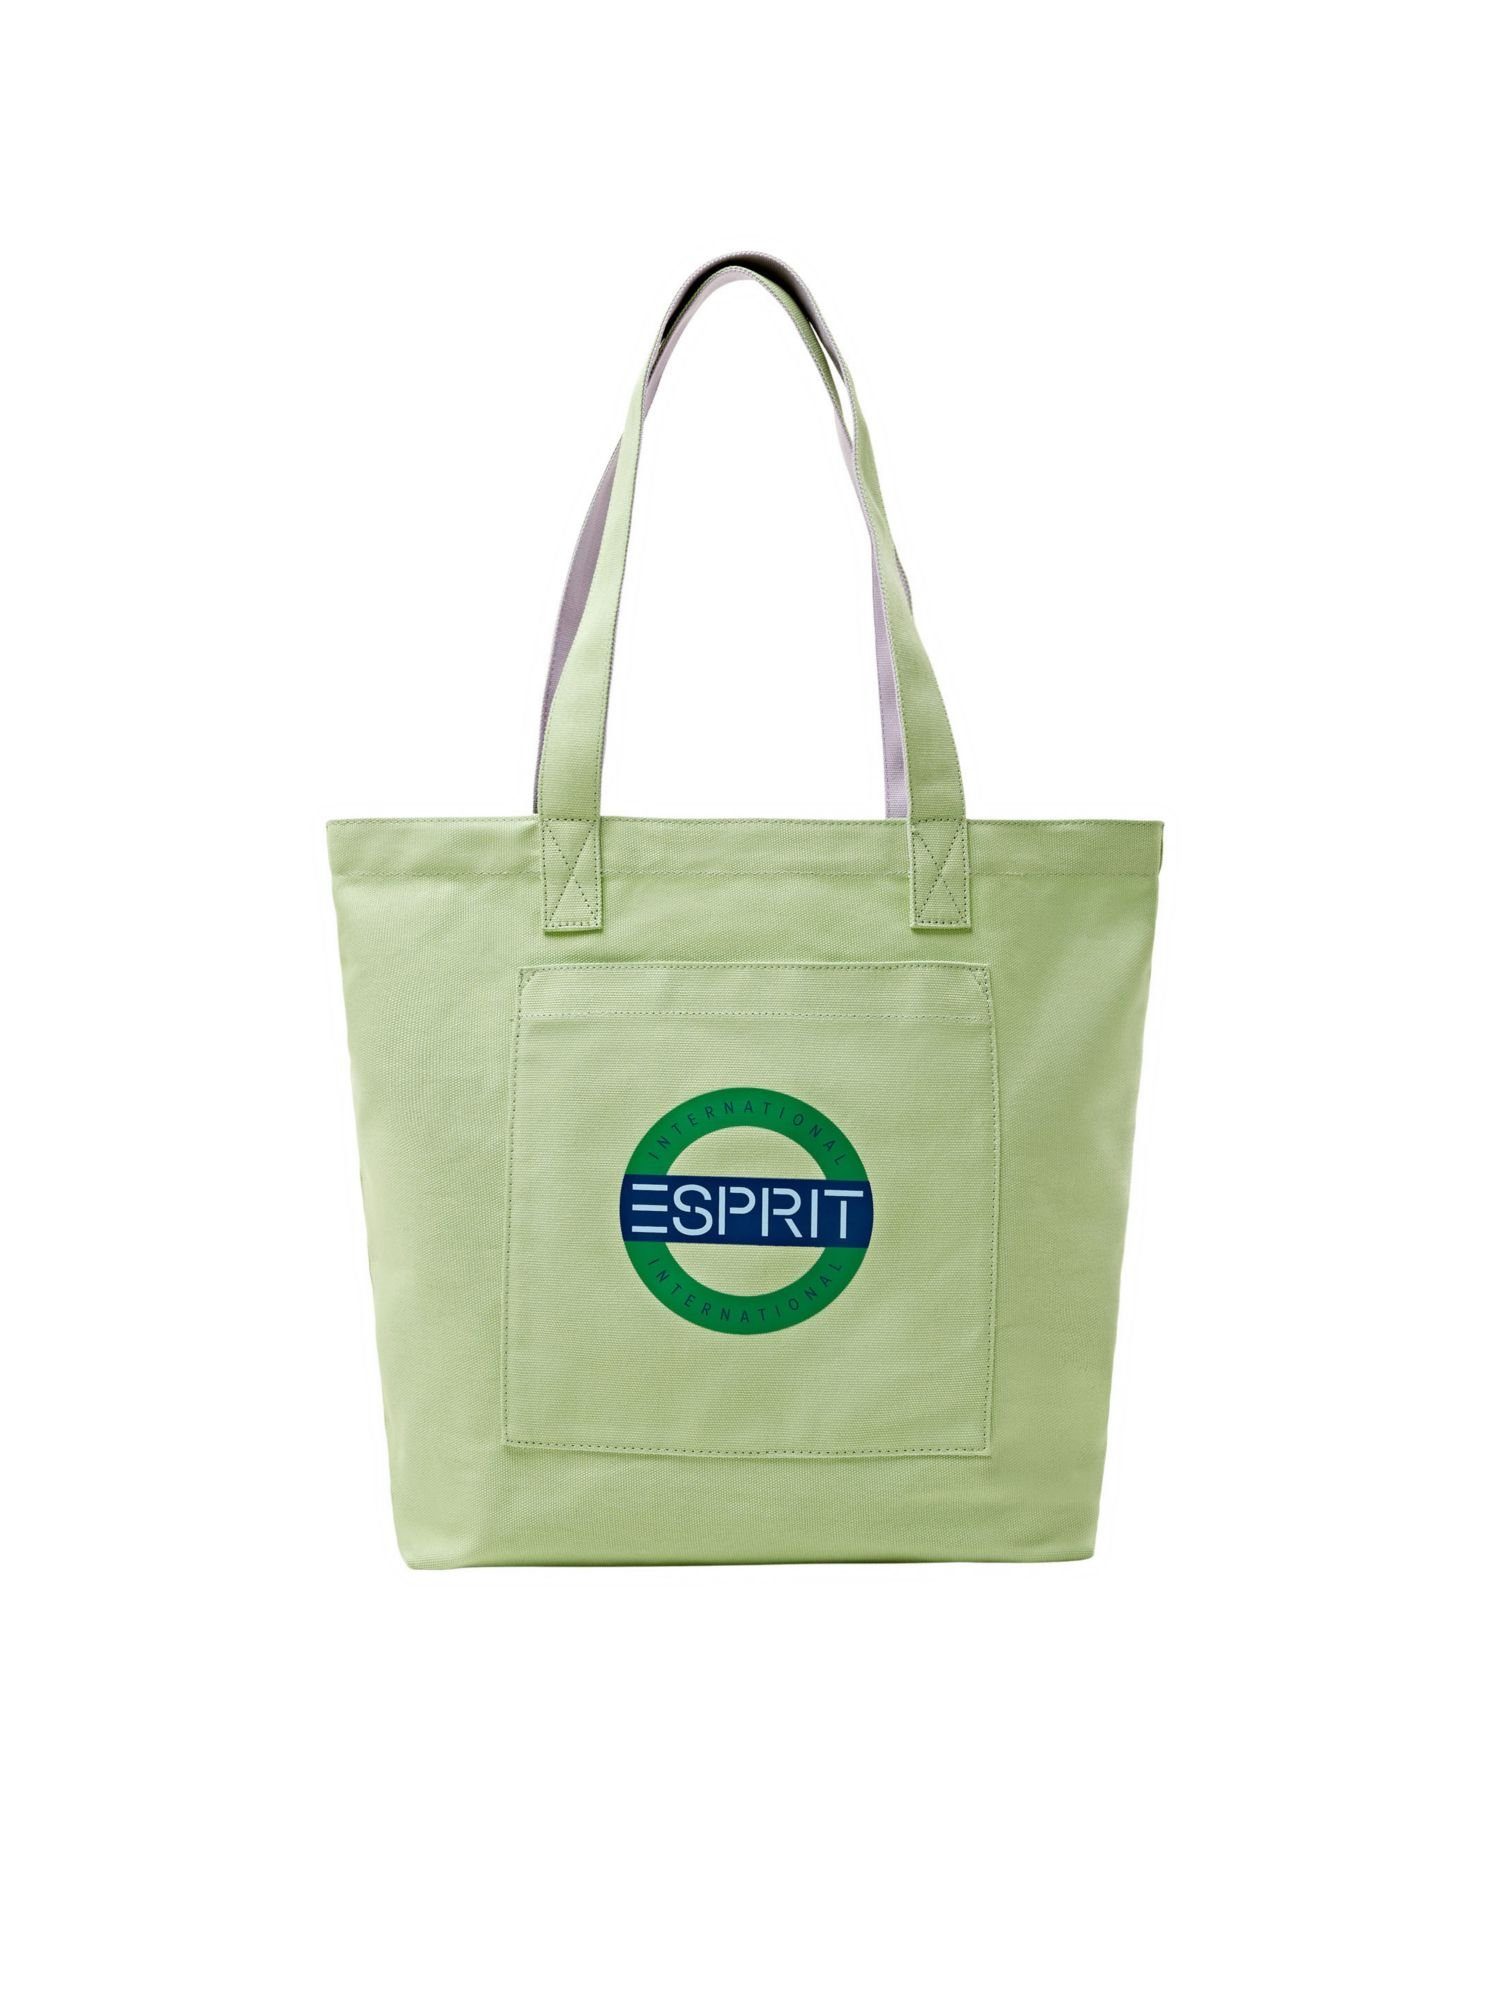 Esprit Schultertasche Tote Bag aus Baumwolle mit Logodesign